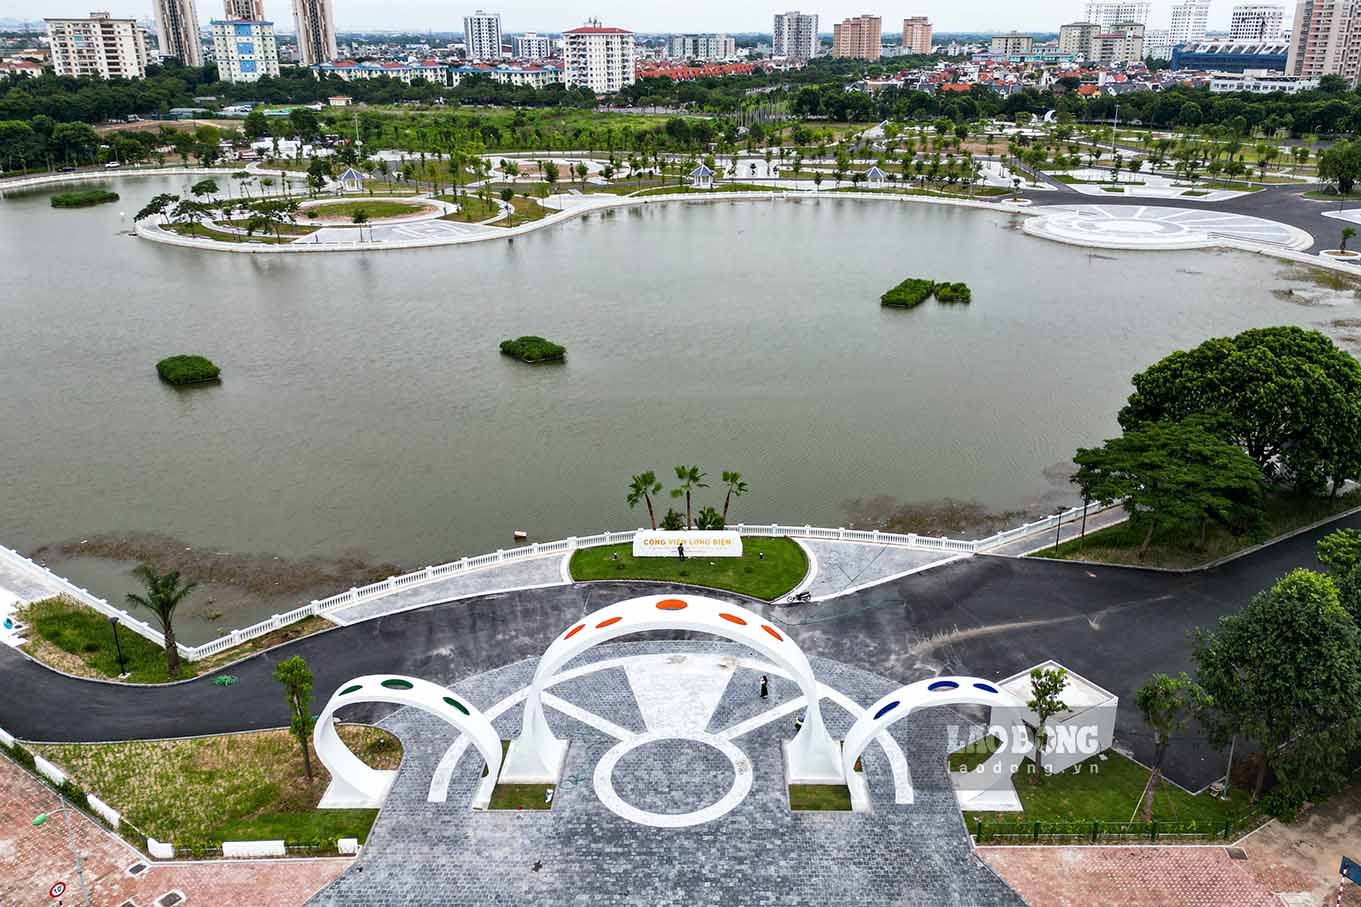 Theo báo cáo của Sở Xây dựng Hà Nội, toàn thành phố hiện nay có 63 công viên, vườn hoa, với tổng diện tích khoảng 300 ha, chiến 2% diện tích đất. Trong đó, bốn quận trung tâm (Ba Đình, Hoàn Kiếm, Đống Đa, Hai Bà Trưng) có 30 công viên, vườn hoa, chiếm 1,92% tổng diện tích đất, đạt 2,08 m2/người. Tuy nhiên, người dân vẫn rất thiếu không gian xanh. Trên thực tế, Hà Nội với mật độ dân số đông, tình trạng ô nhiễm không khí khiến người dân Thủ đô luôn thấy ngột ngạt. Việc đầu tư cho không gian xanh sẽ góp một phần quan trọng trong việc điều hòa không khí, cải tạo vi khí hậu, bảo vệ môi trường sống và phục vụ đời sống người dân.